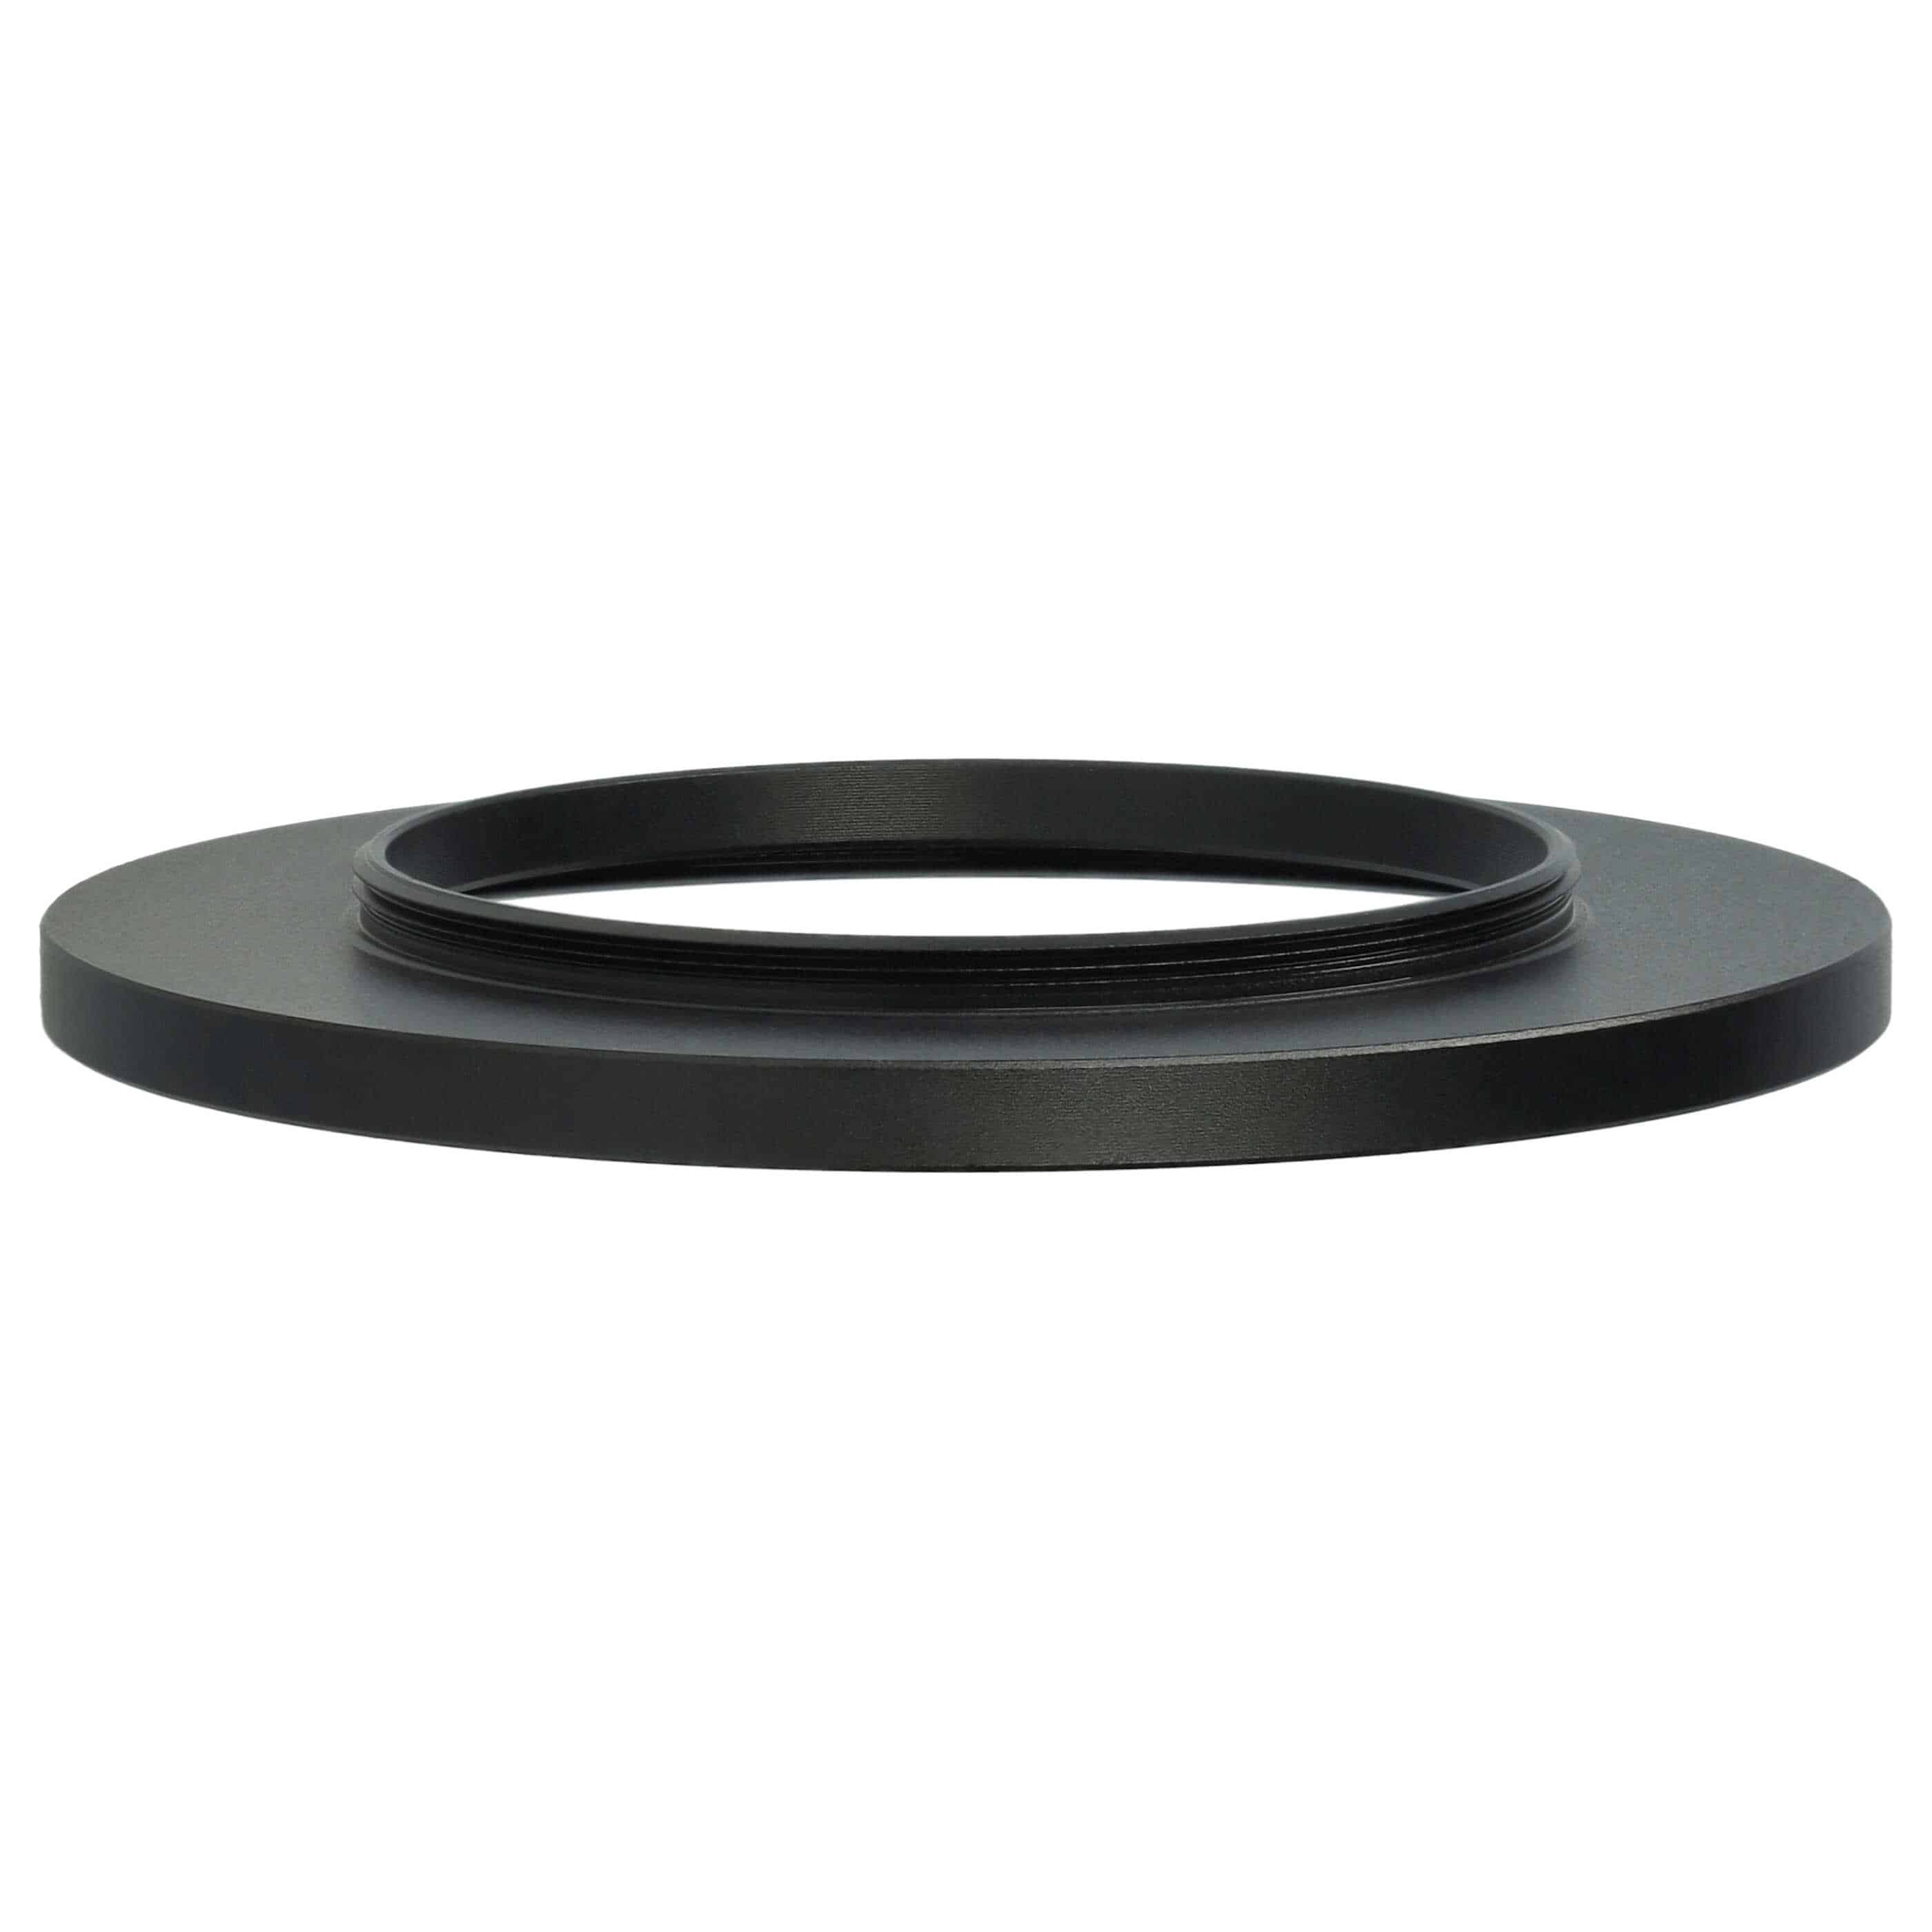 Step-Up-Ring Adapter 43 mm auf 62 mm passend für diverse Kamera-Objektive - Filteradapter